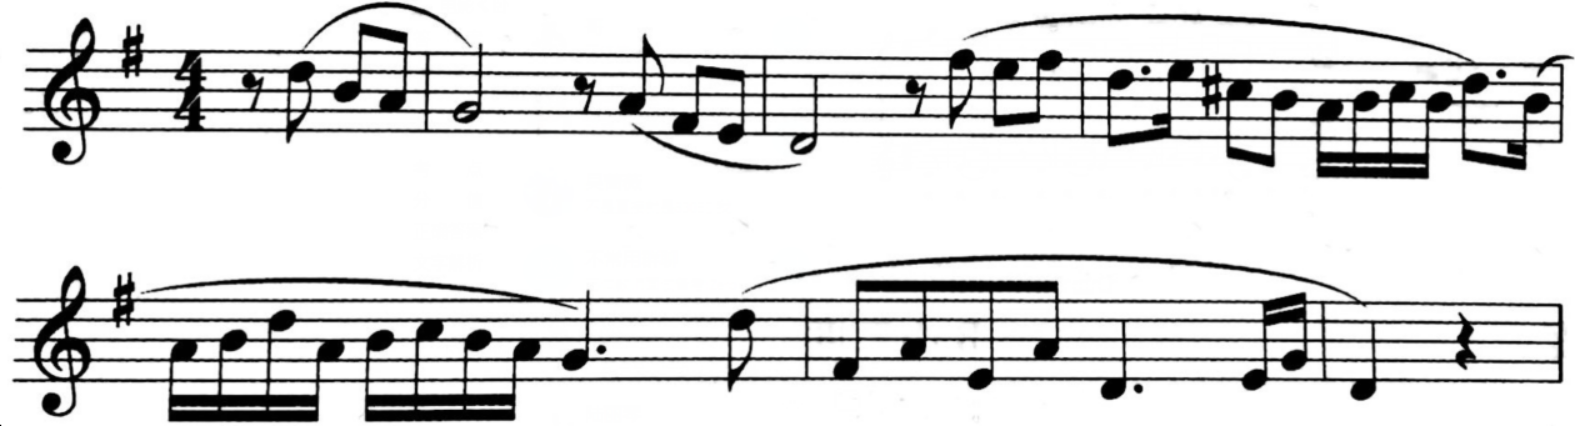 谱例中的旋律是由双簧管独奏的引子部分，出自于哪部作品 （ ）